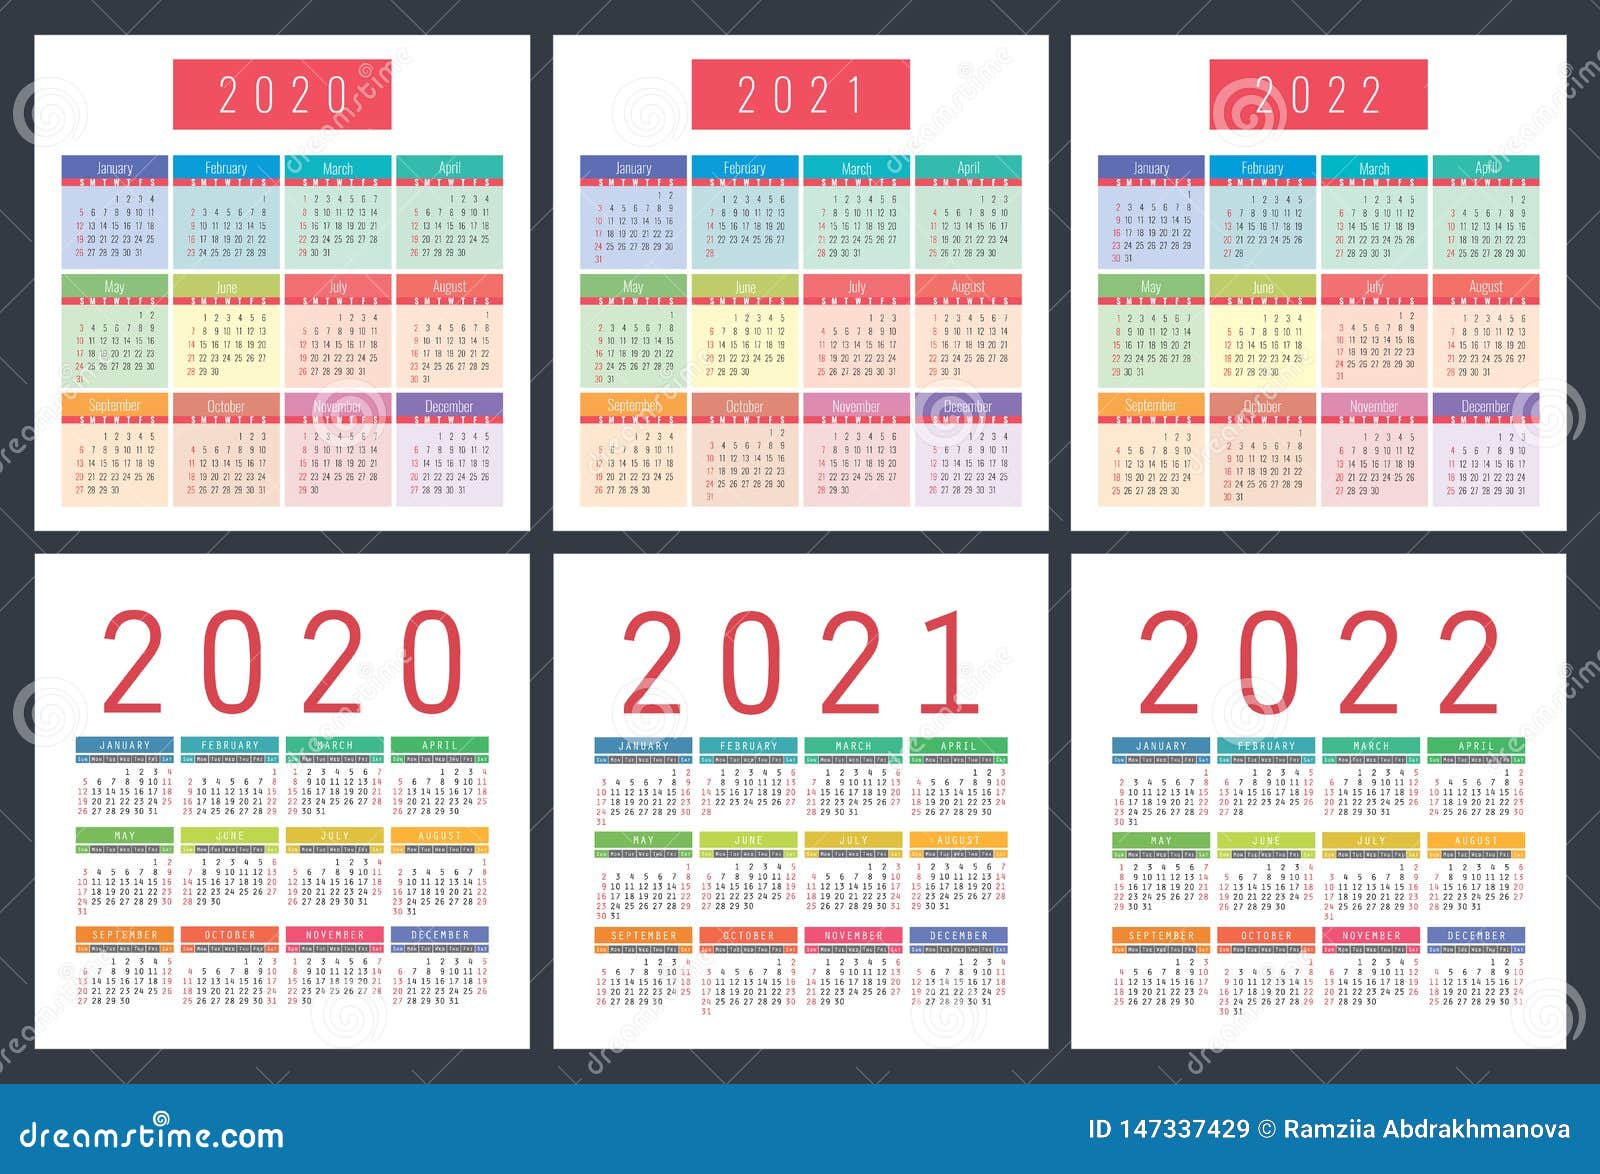 Календарь 2020 2021 2022 на одном листе. Календарь 2021-2026 год. Календарь 2022 плакатный сетка. Календарь 2020 2021 год